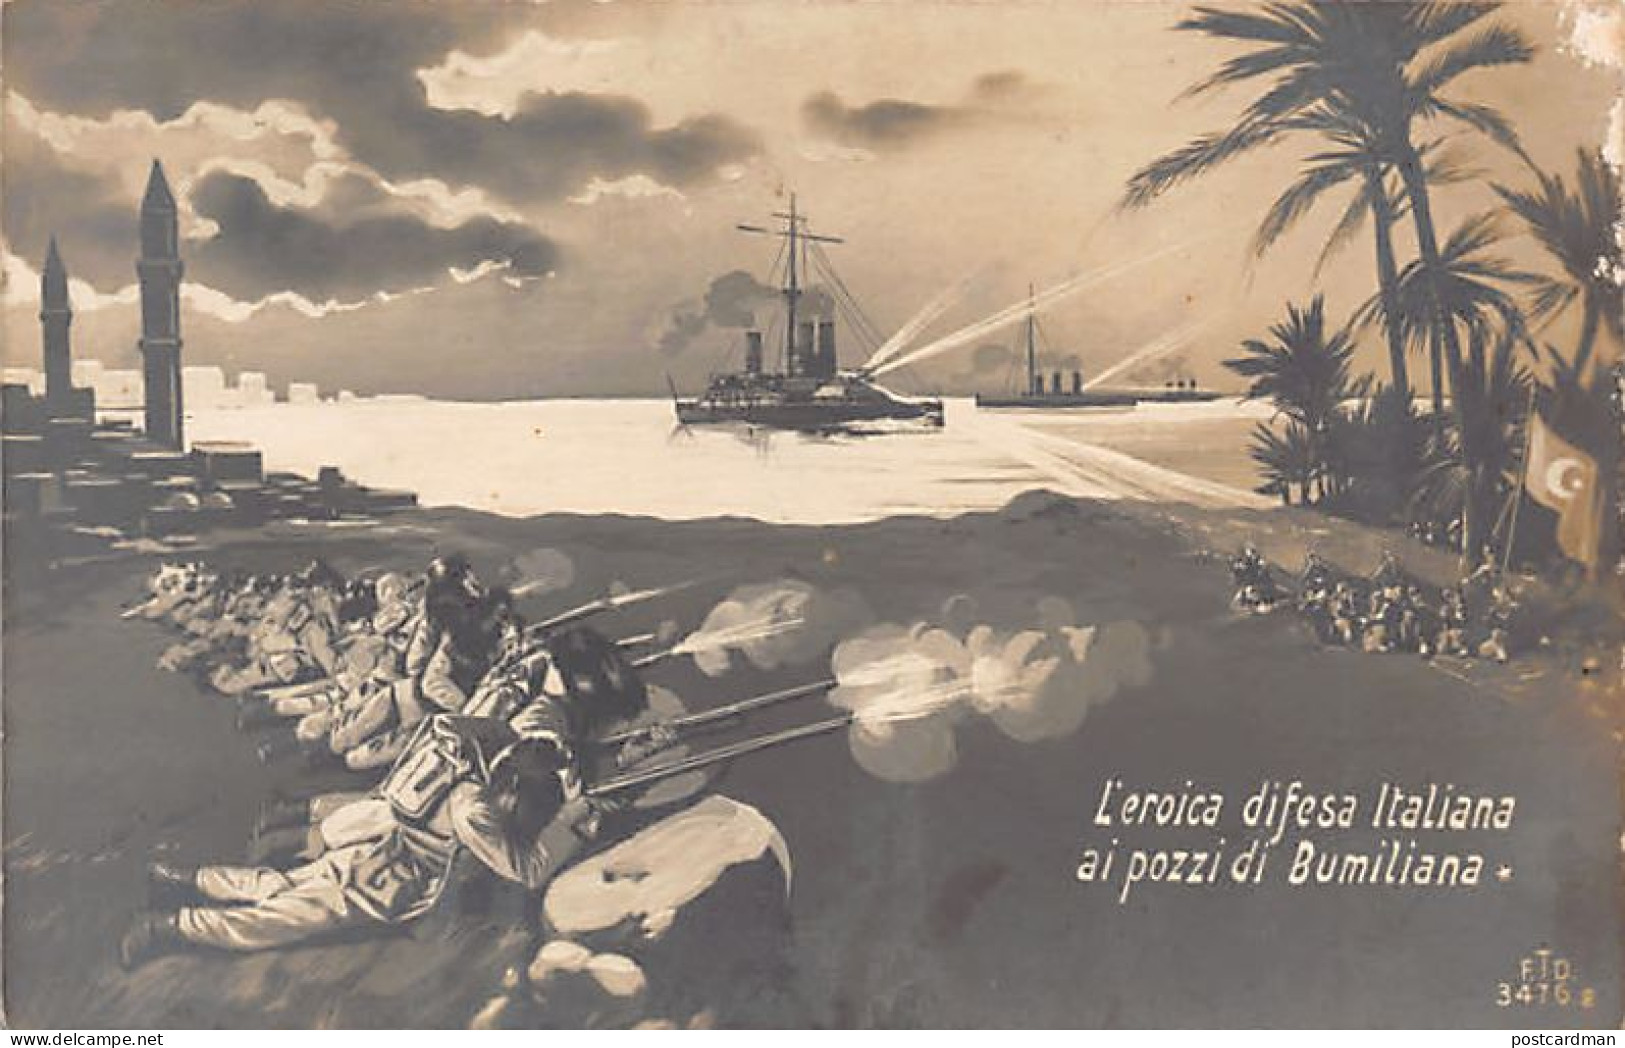 Libya - Italo-Turkish War - The Heroic Italian Defense Of The Bumiliana Well - Libia